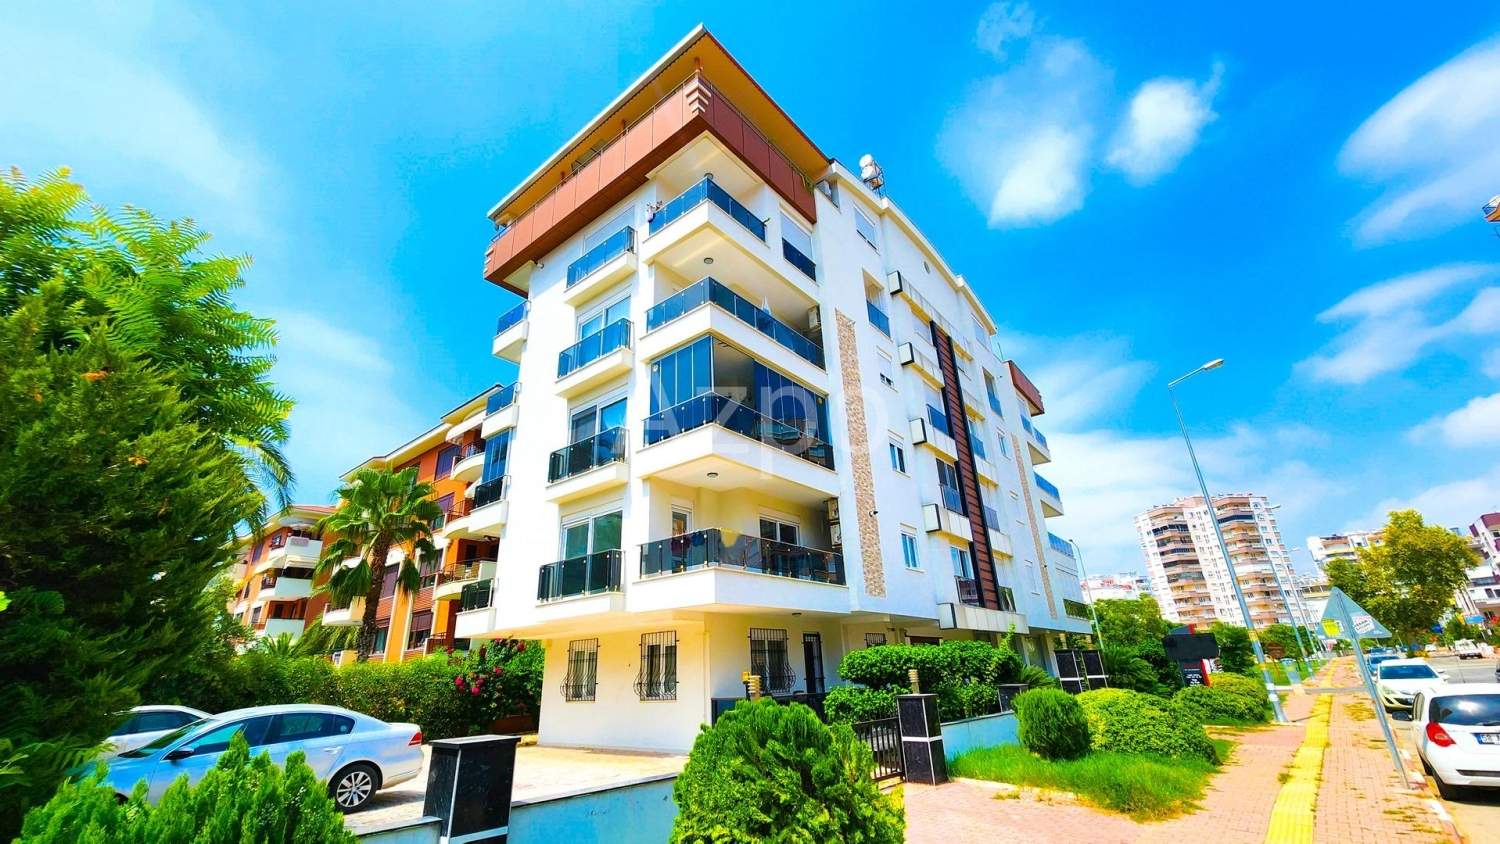 Квартира 3+1 в Анталии, Турция, 160 м²